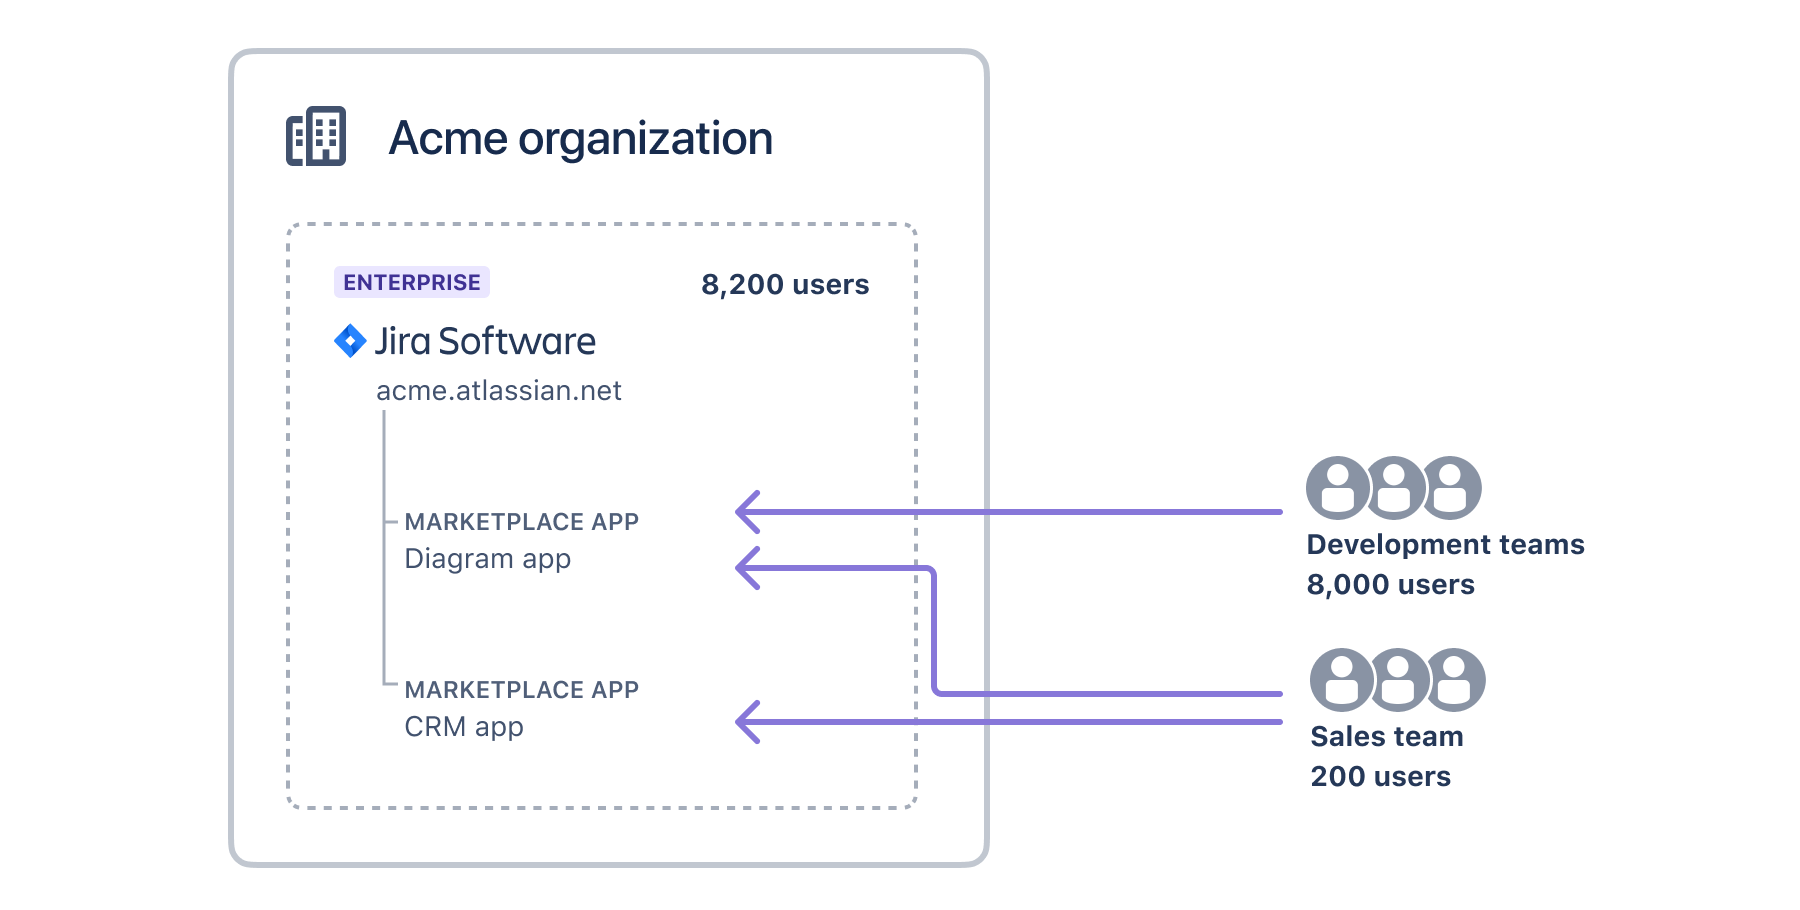 2 つのアプリを含む Jira インスタンス 1 つを持つ組織と、各アプリを必要とするユーザー数を示す図。